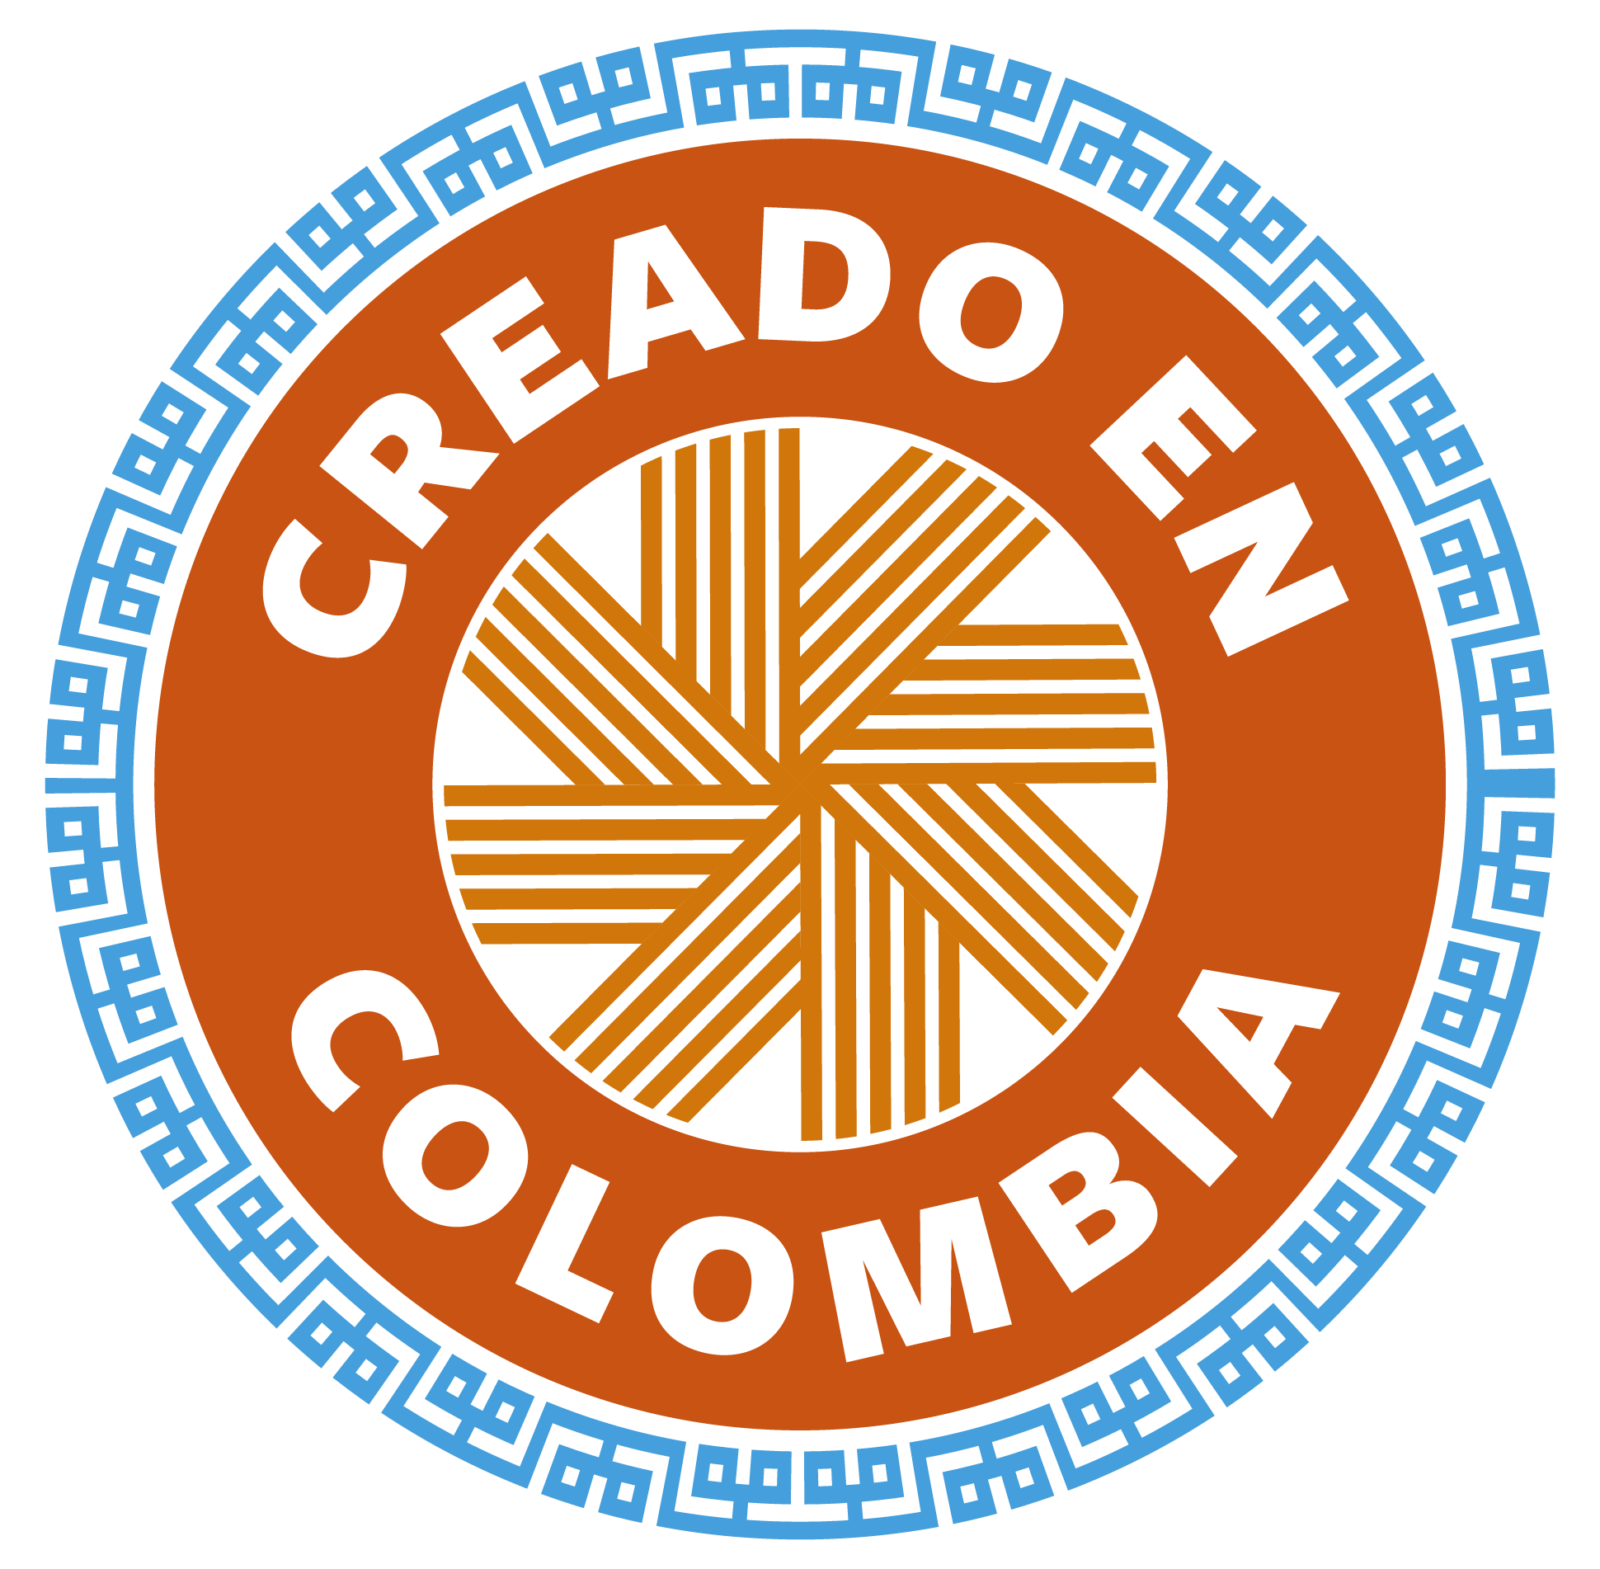 Creado-en-Colombia